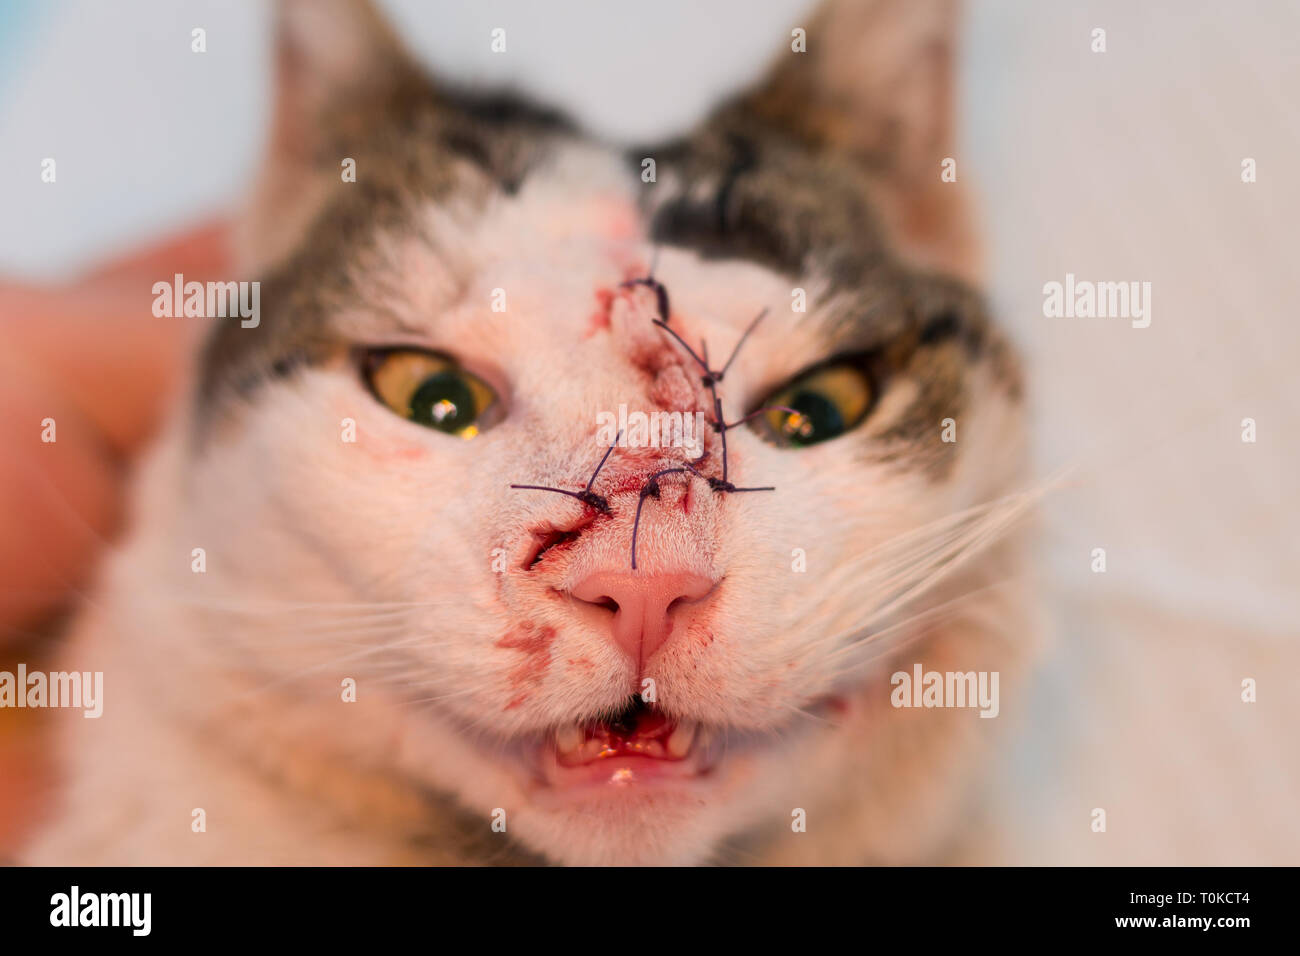 La faccia del gatto dopo un intervento chirurgico per rimuovere un tumore,  la sutura in punti separati Foto stock - Alamy